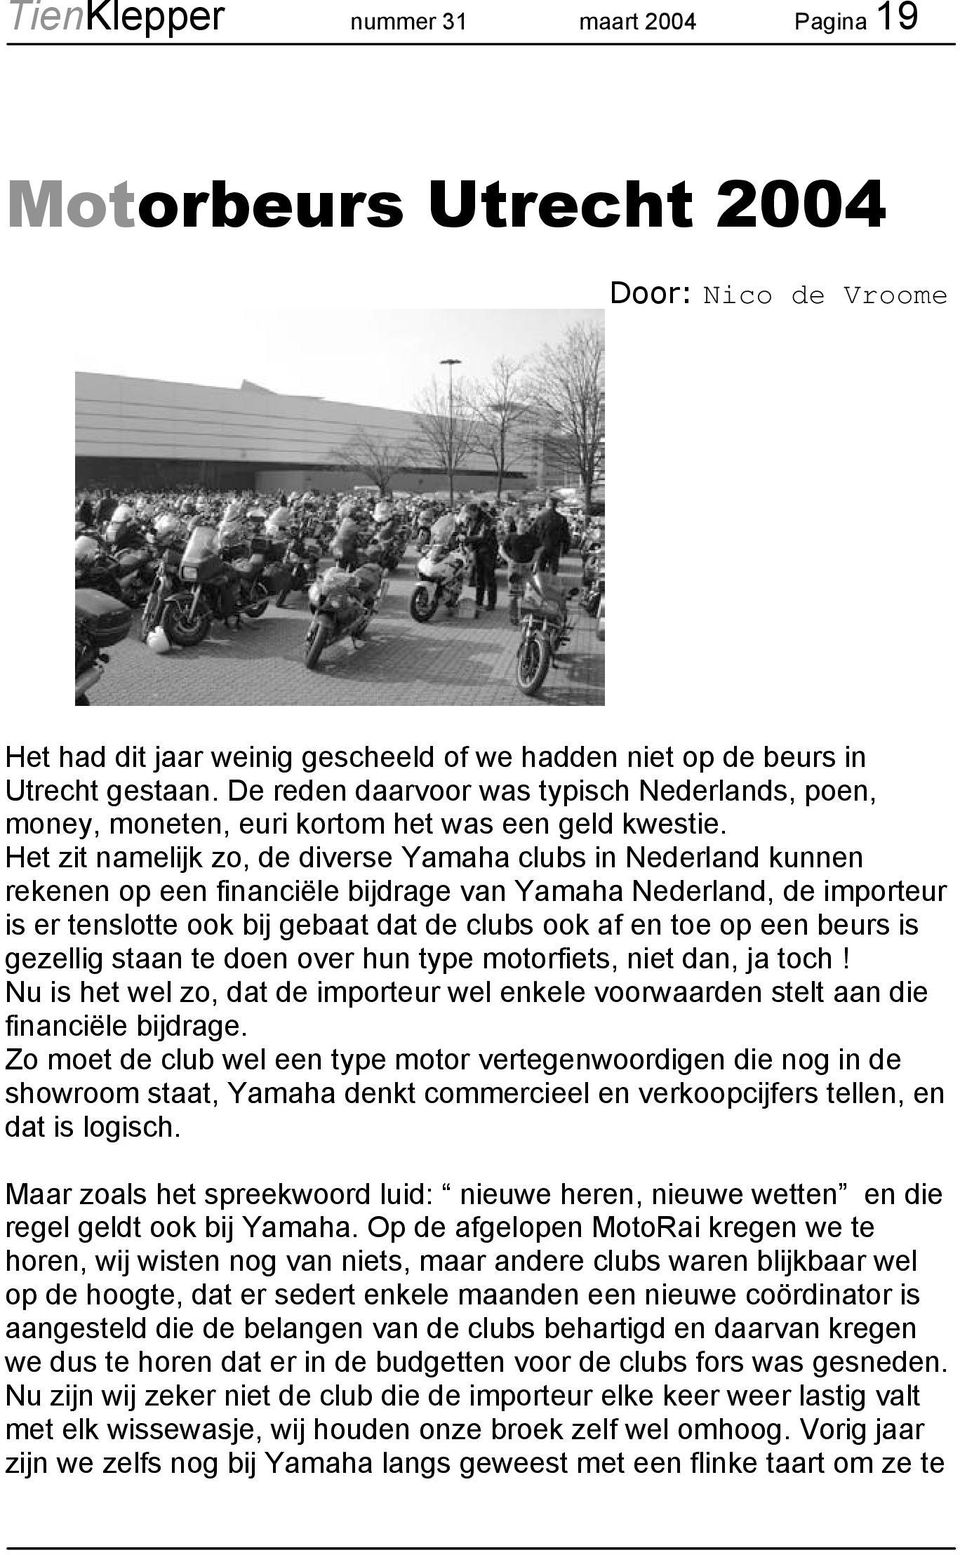 Het zit namelijk zo, de diverse Yamaha clubs in Nederland kunnen rekenen op een financiële bijdrage van Yamaha Nederland, de importeur is er tenslotte ook bij gebaat dat de clubs ook af en toe op een